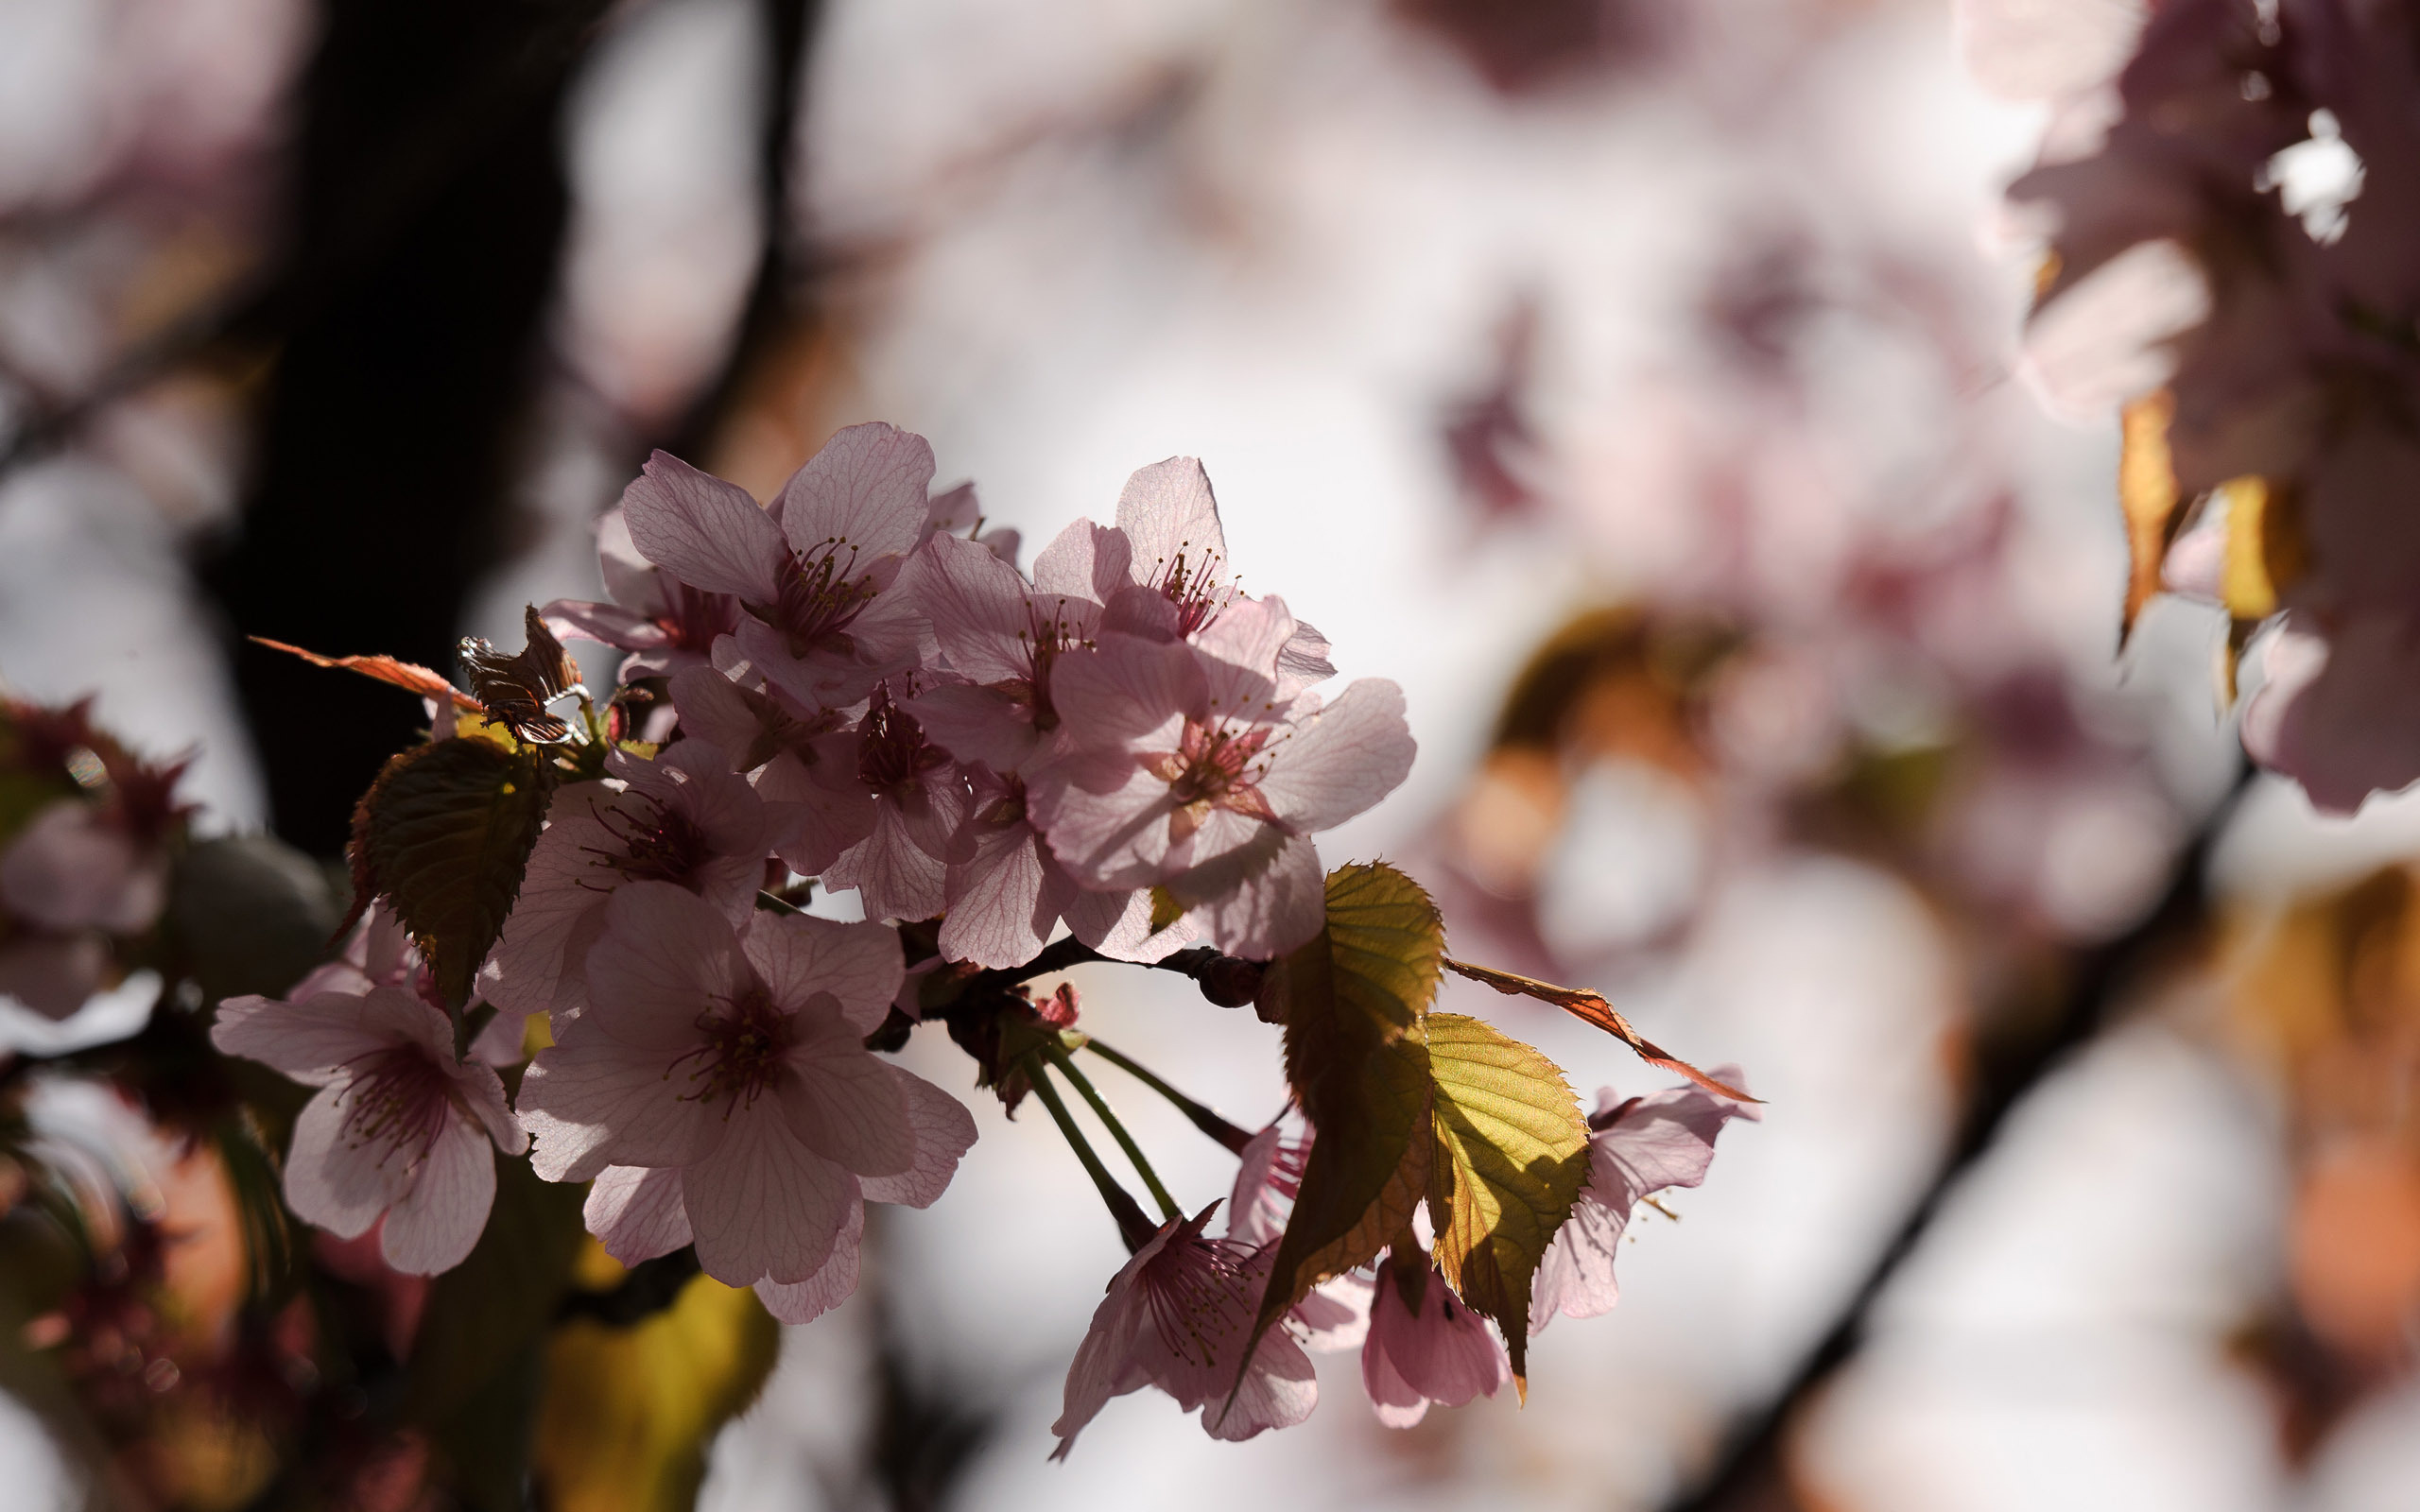 دانلود تصویر استوک شکوفه های بهاری با کیفیت بالا